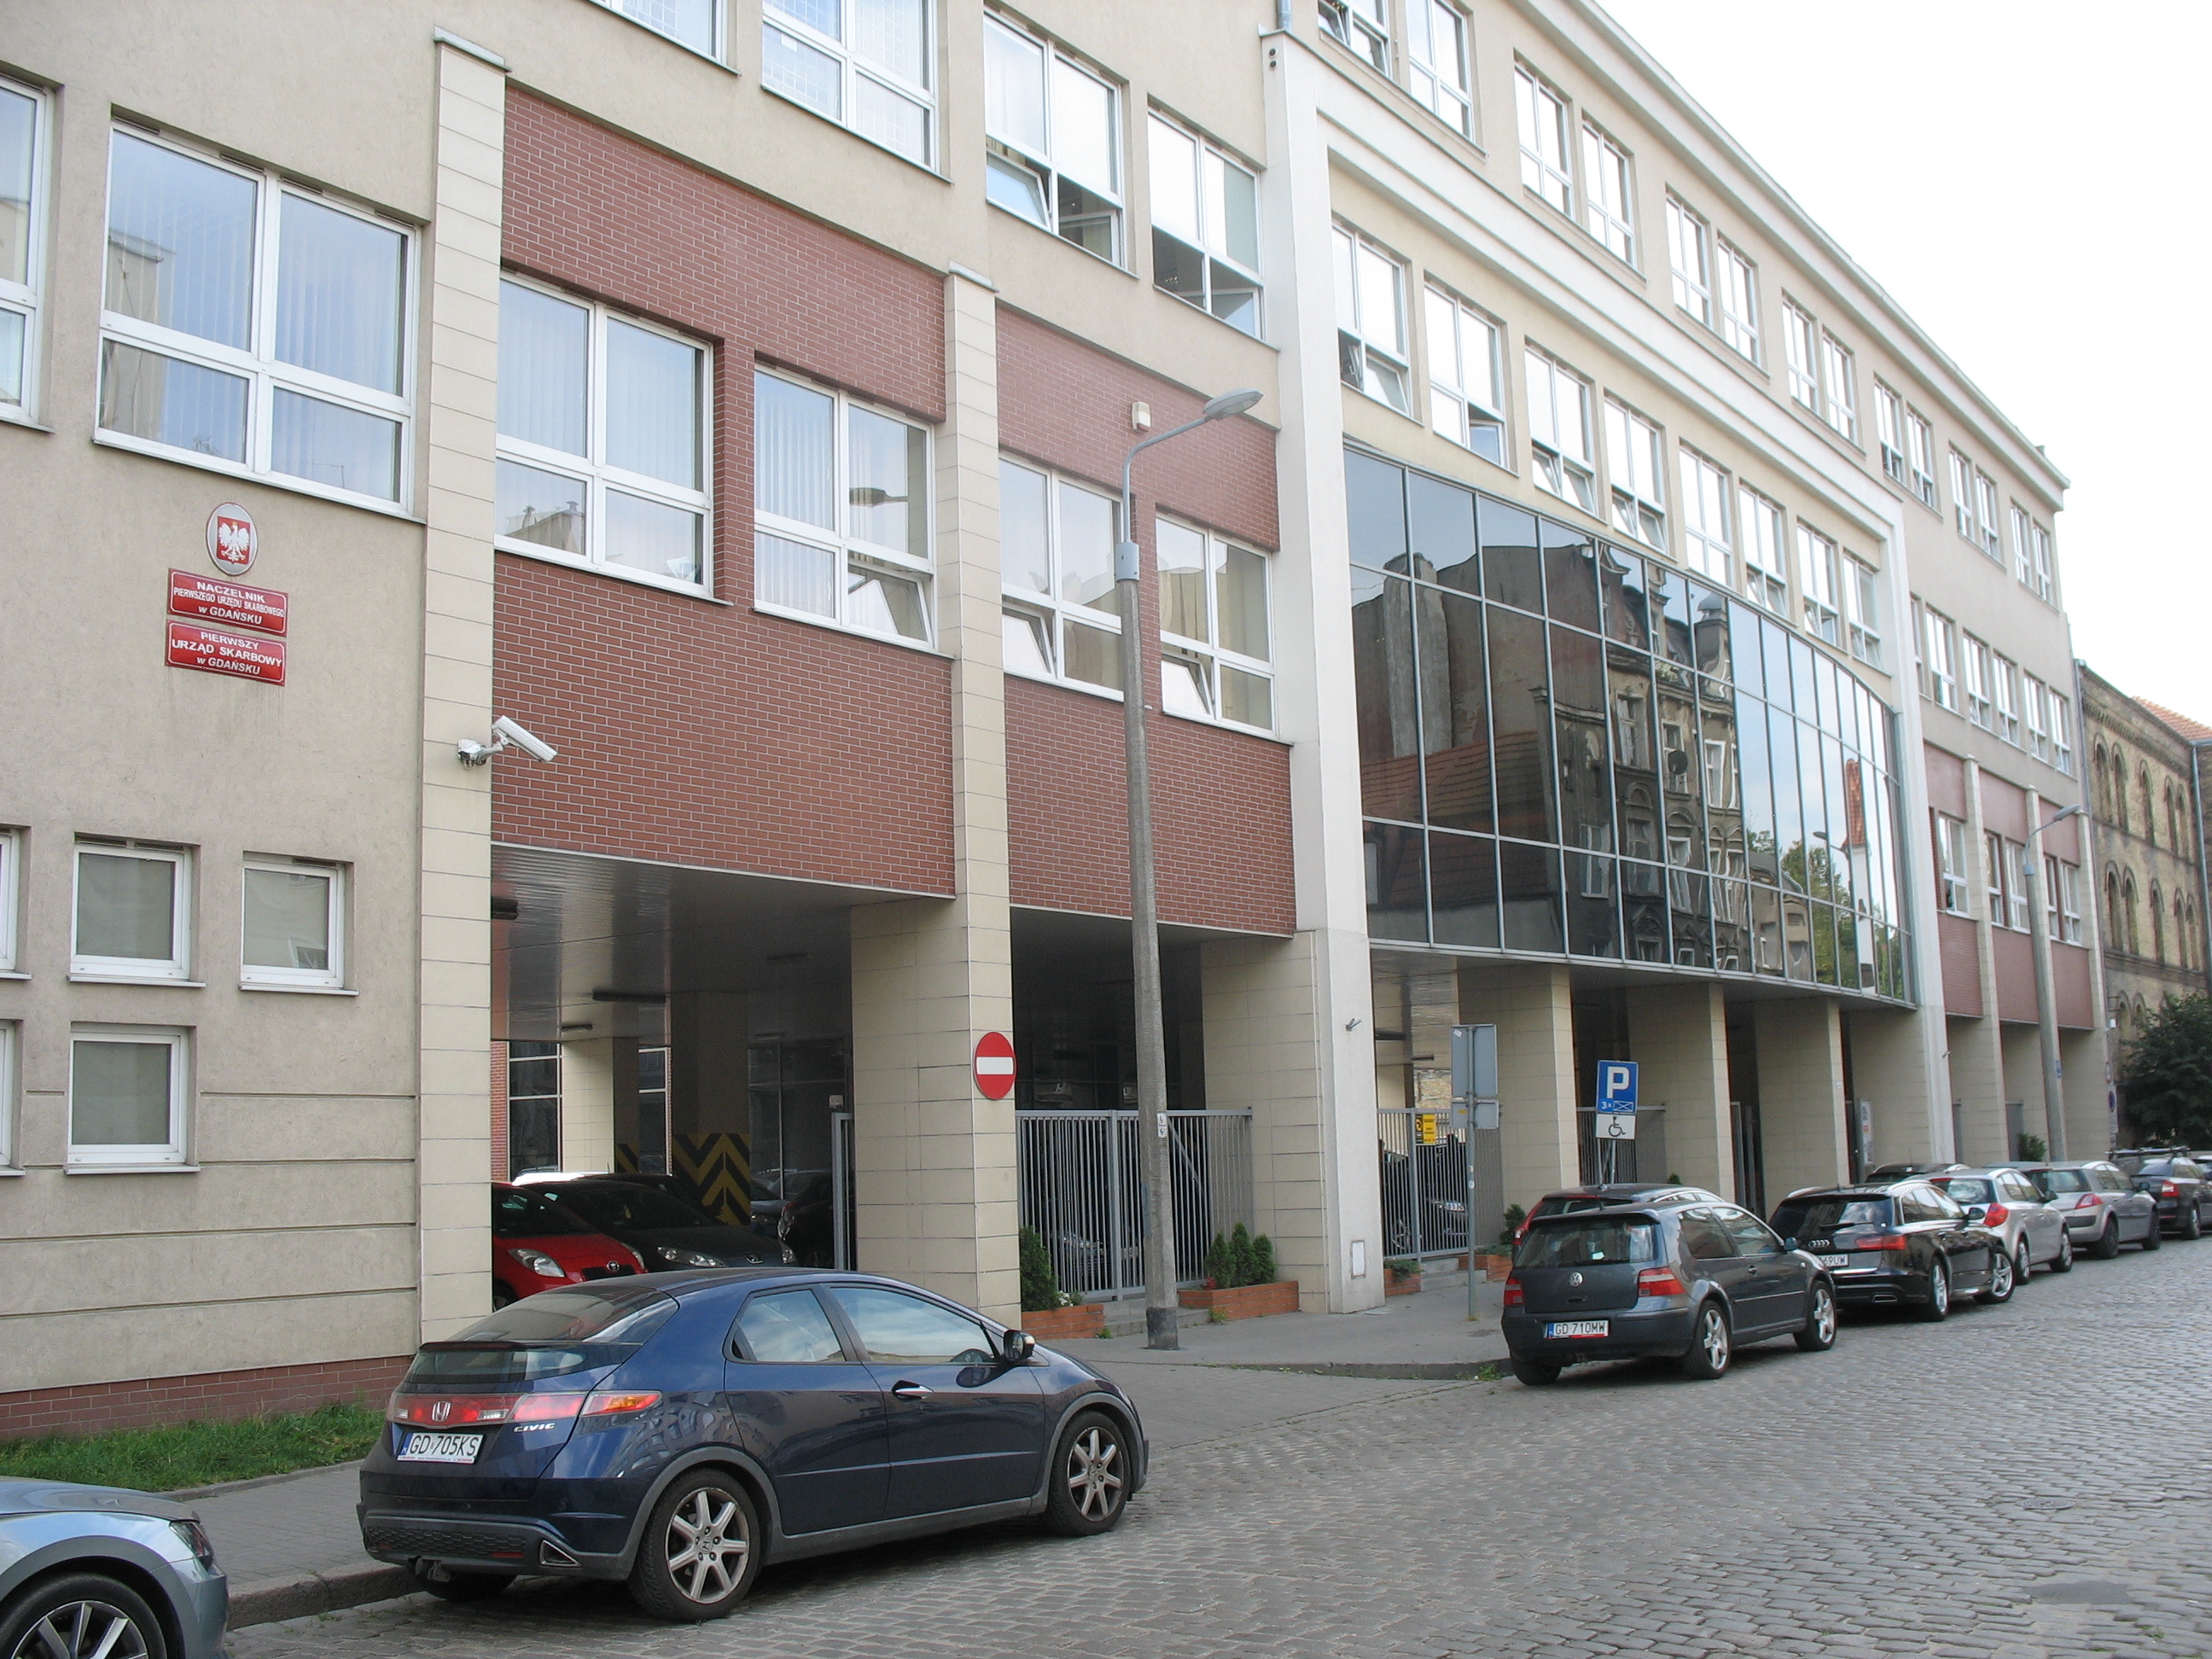 Budynek o beżowo-brązowej elewacji, w której znajduje się siedziba Pierwszego Urzędu Skarbowego w Gdańsku